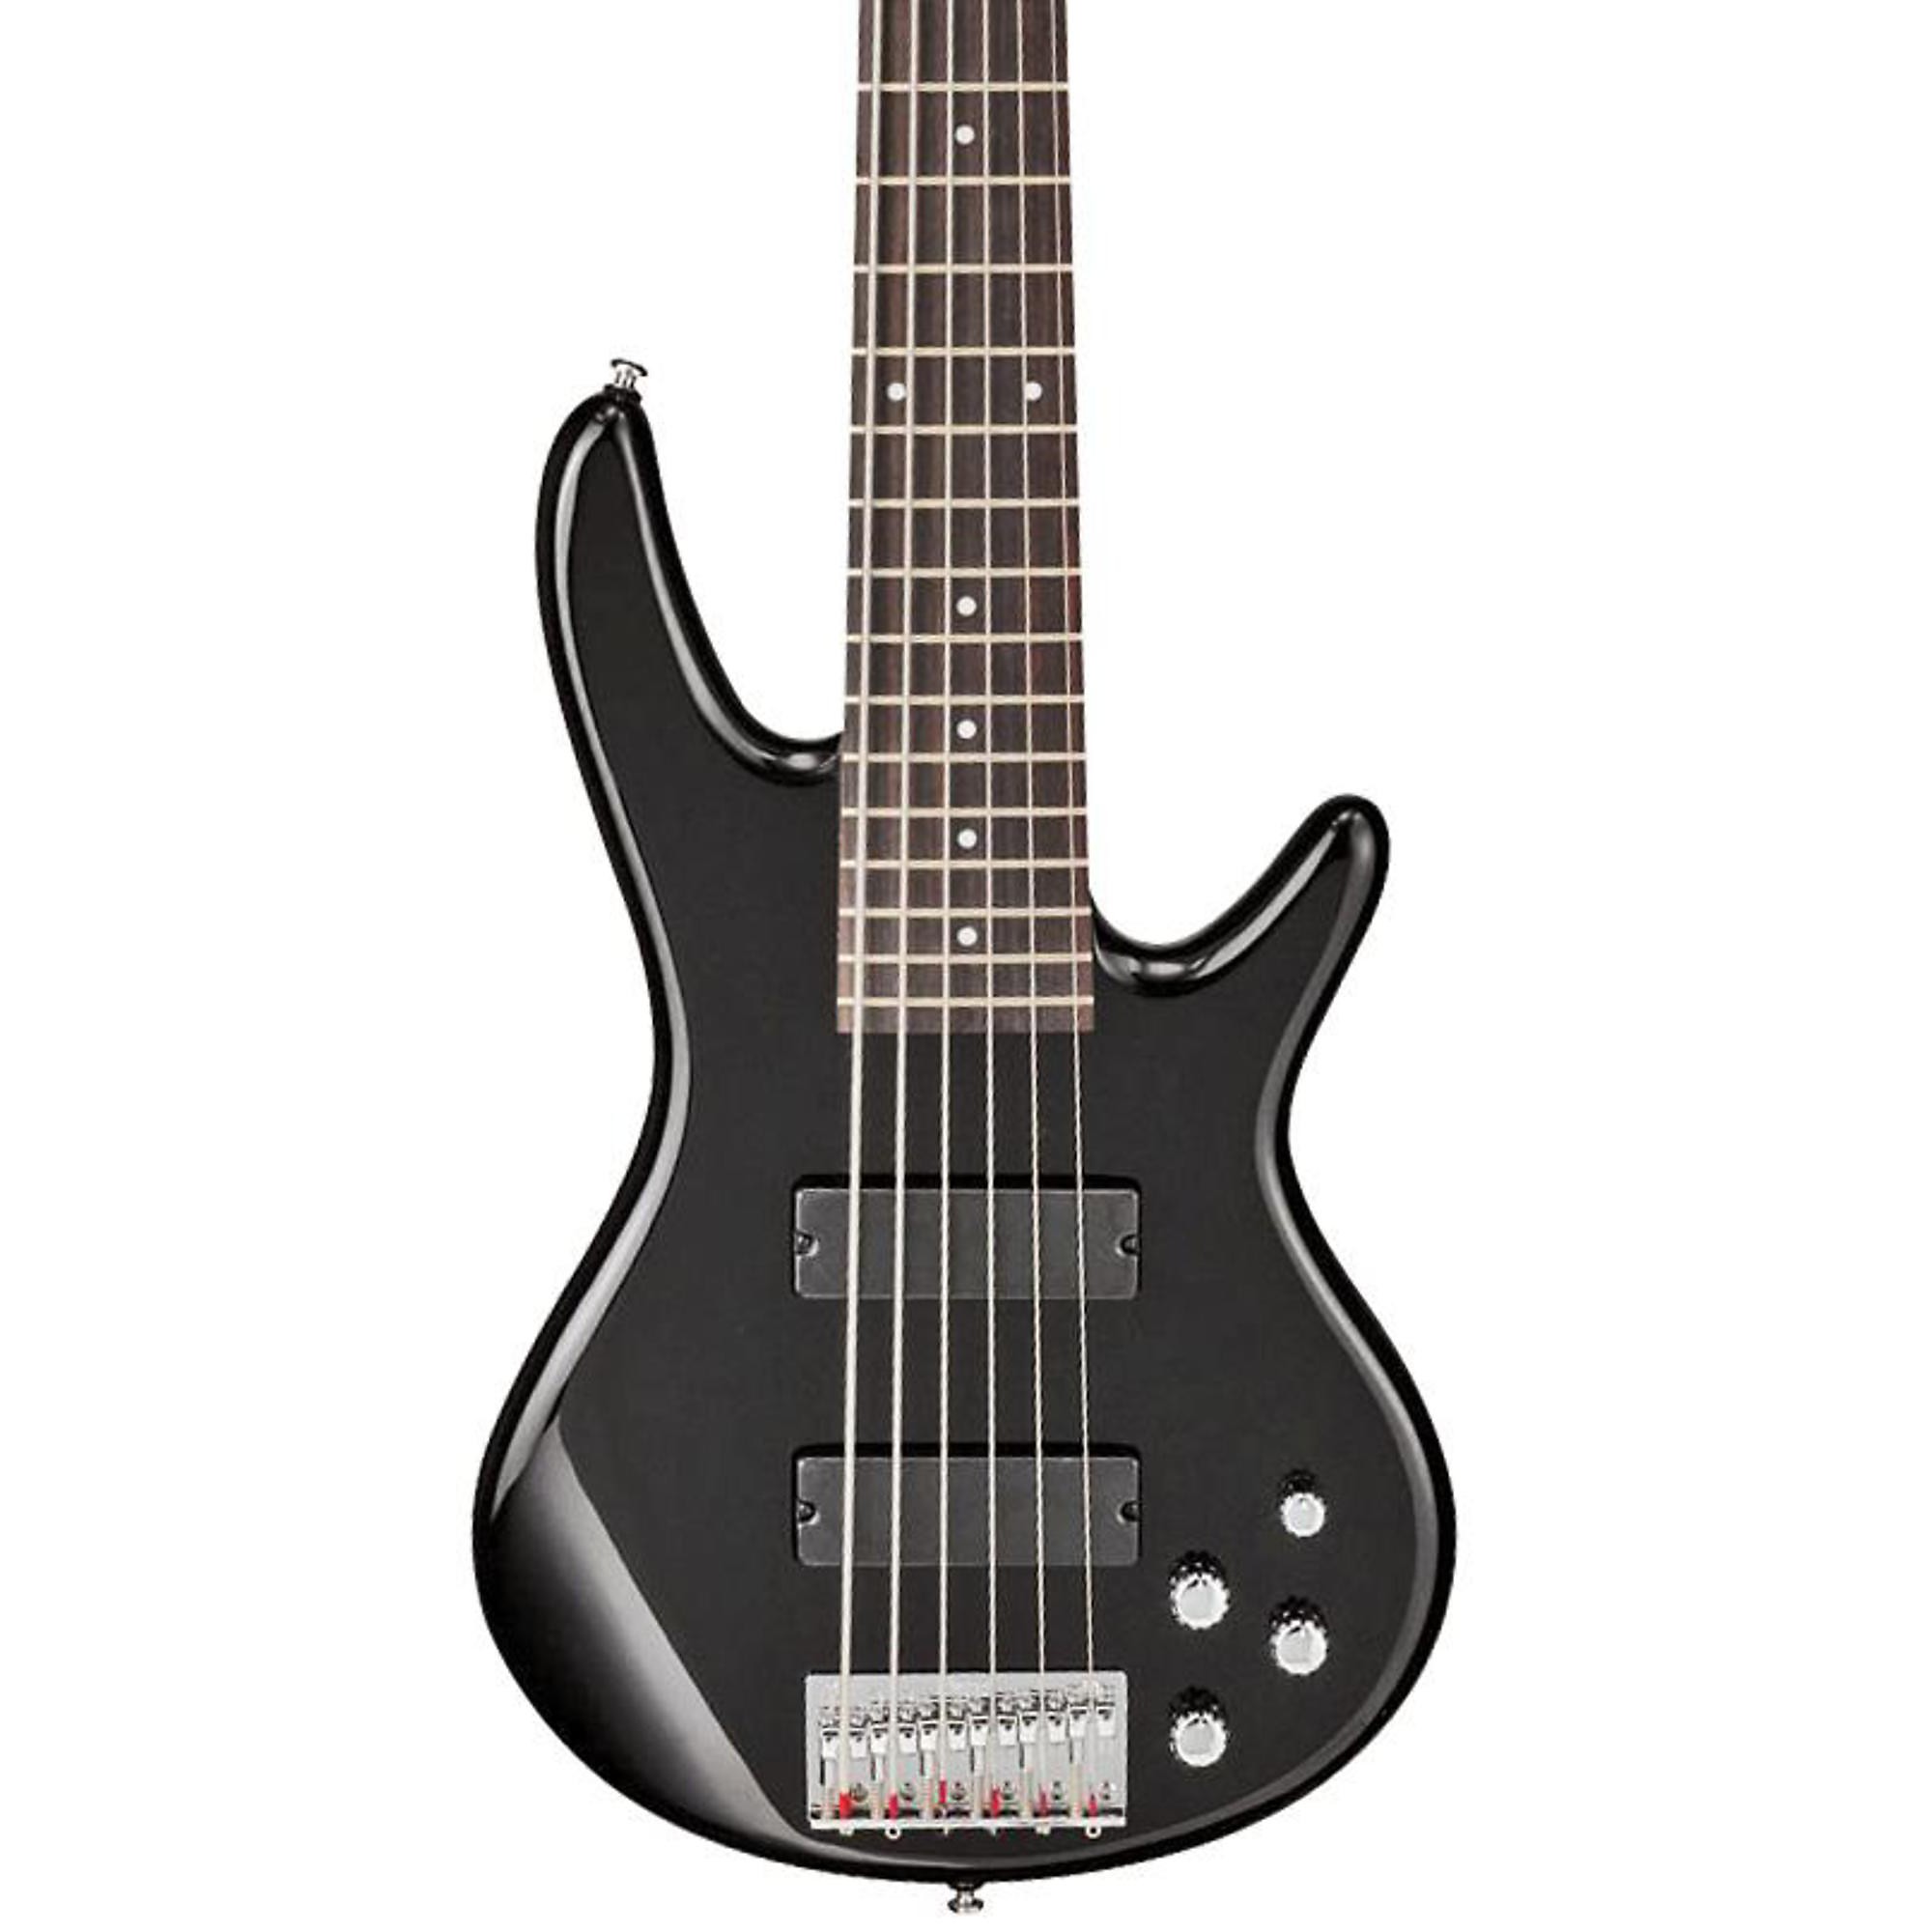 Ibanez Gio GSR206 6-струнная бас-гитара, черная